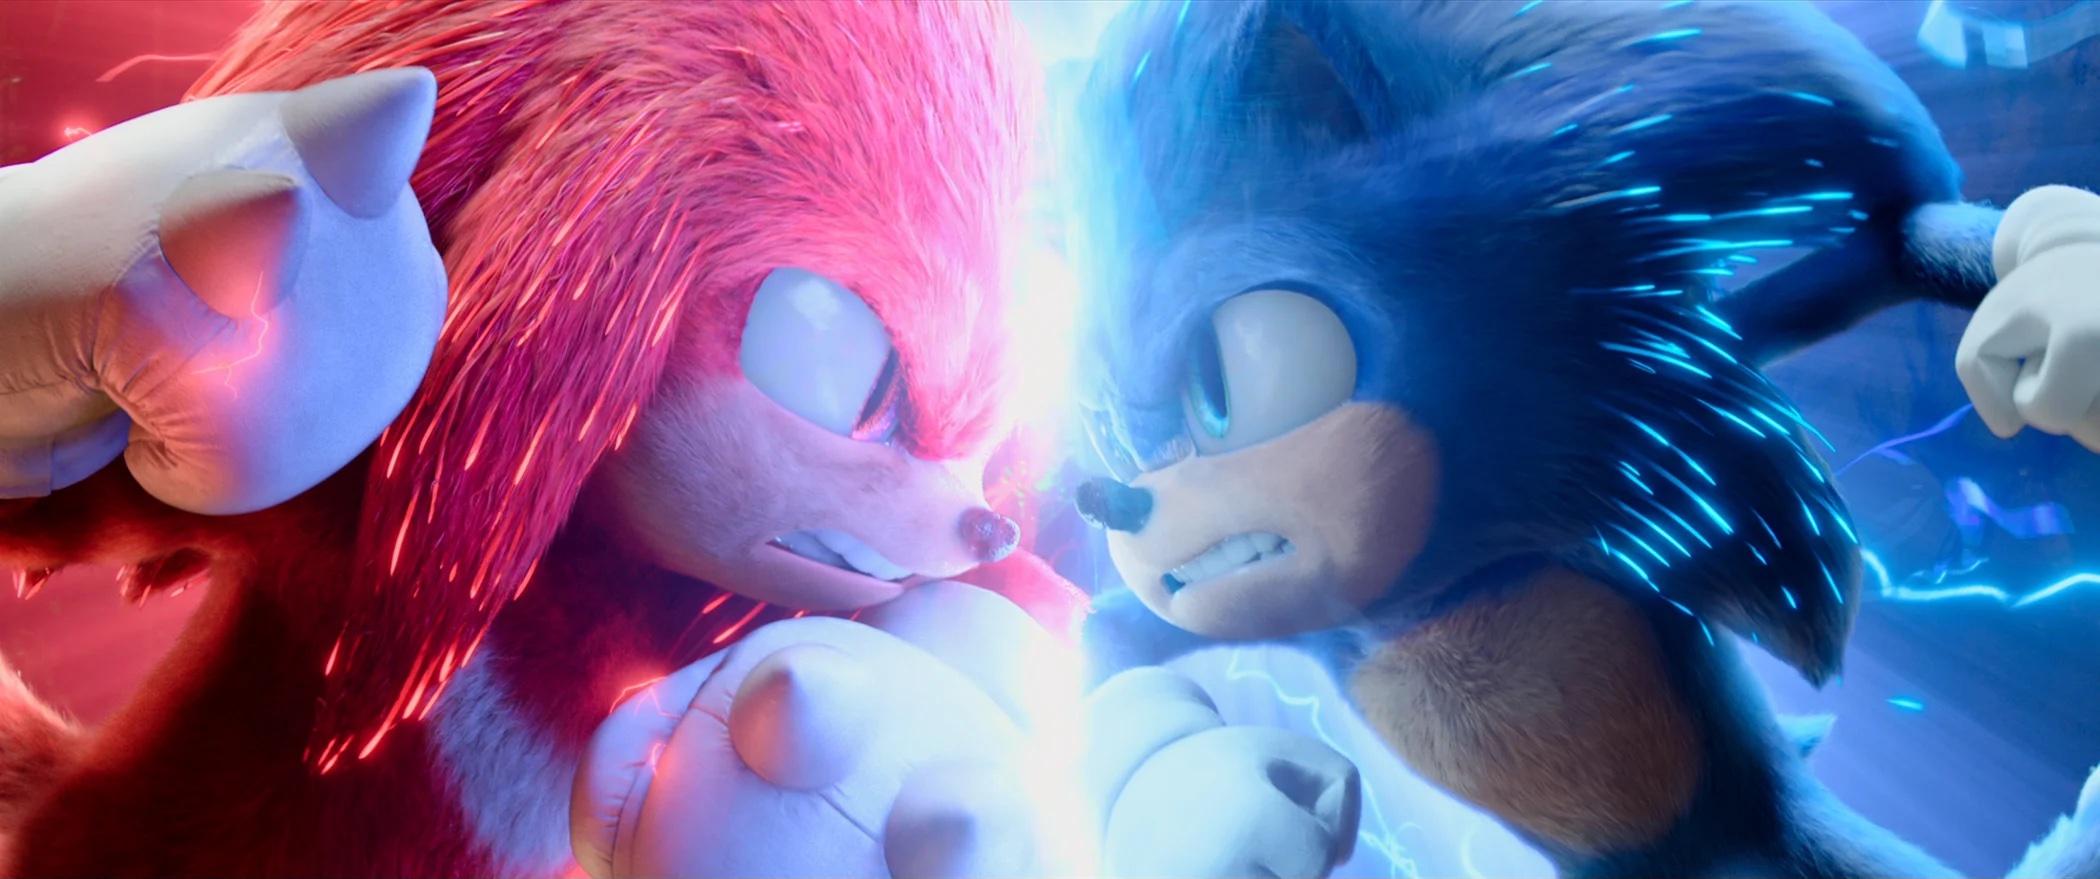 Fans Hail Sonic 3 Announcement as Jim Carrey Franchise Raises